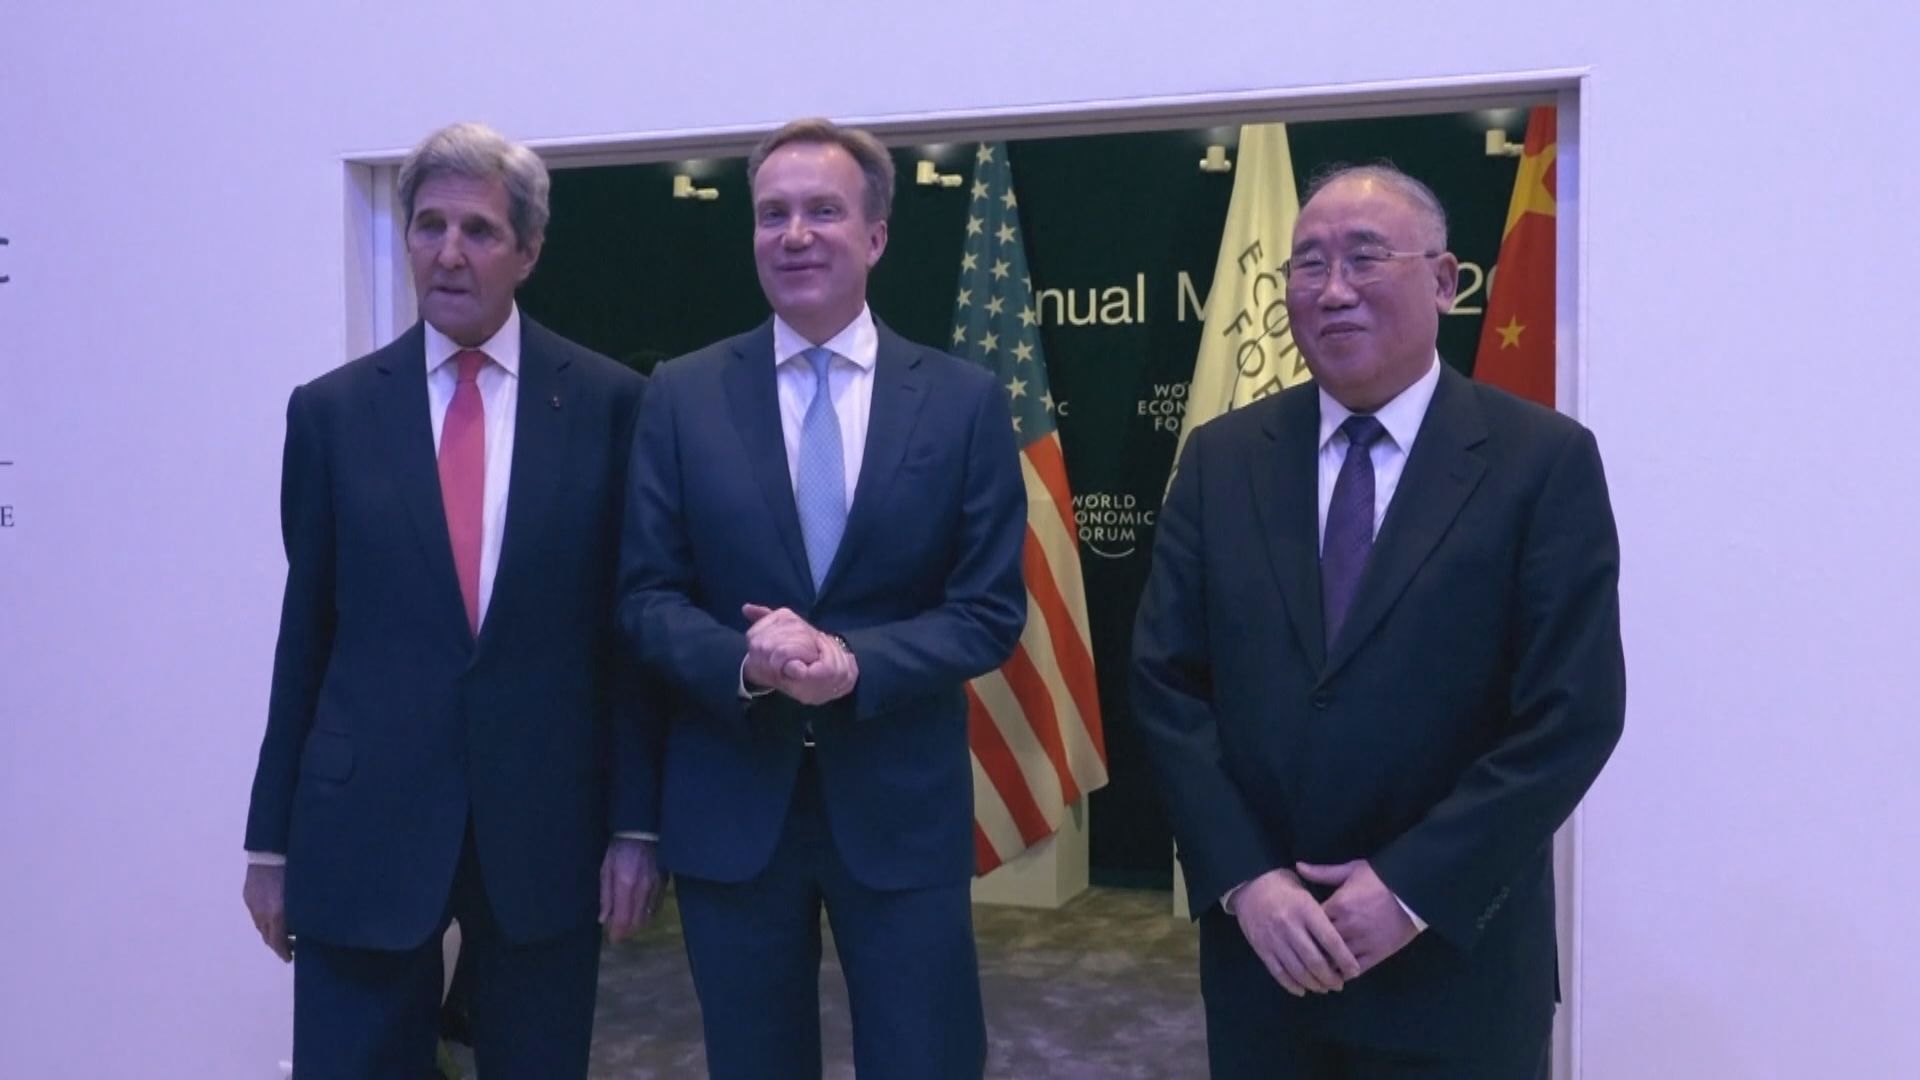 克里抵達北京 中美雙方周一起討論合作應對氣候變化